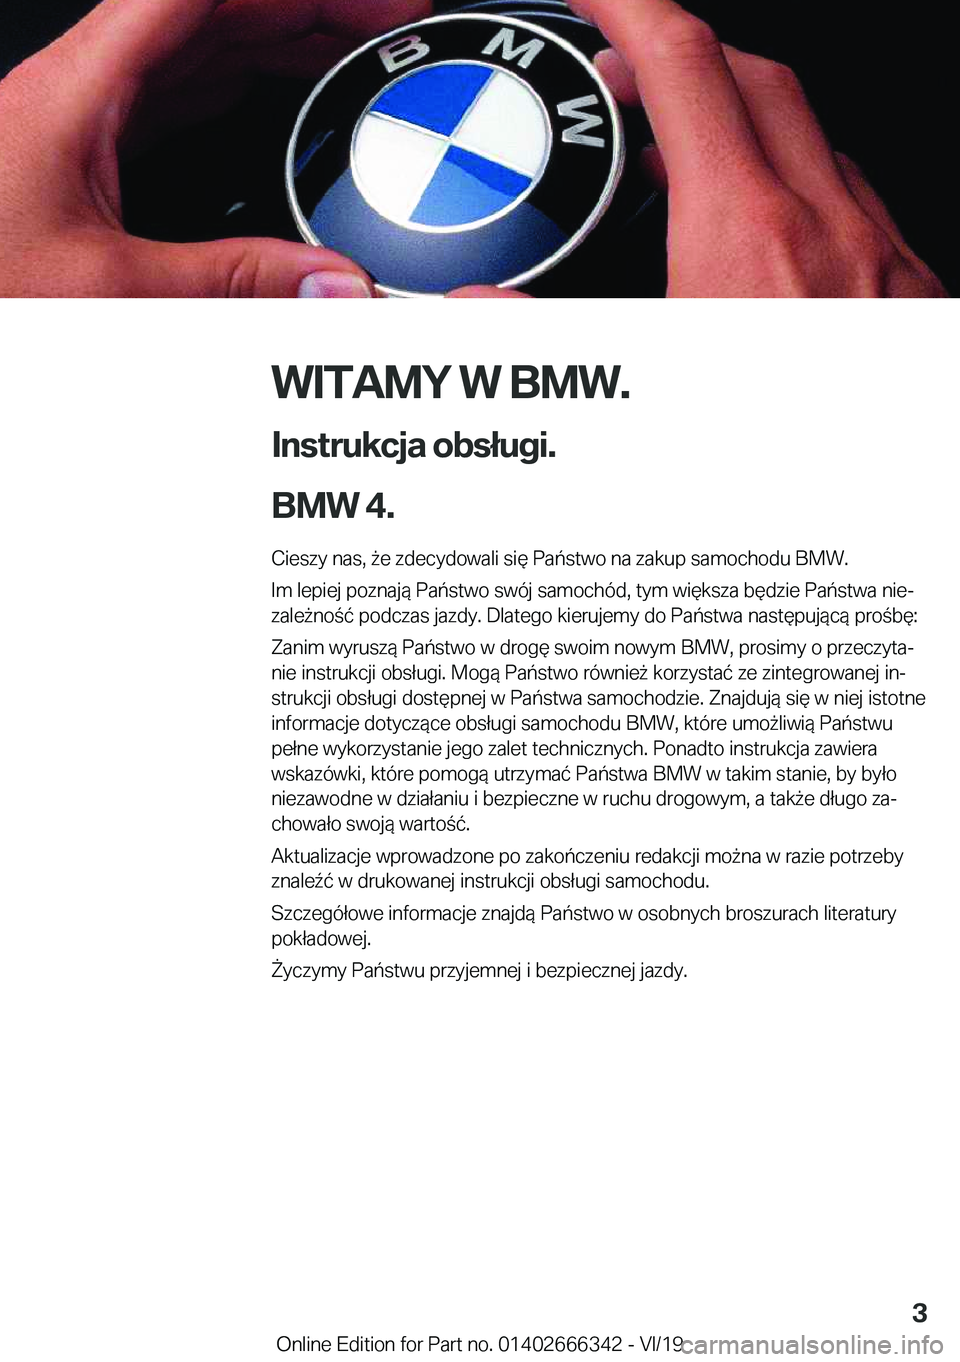 BMW 4 SERIES COUPE 2020  Instrukcja obsługi (in Polish) �W�I�T�A�M�Y��W��B�M�W�.
�I�n�s�t�r�u�k�c�j�a��o�b�s�ł�u�g�i�.
�B�M�W��4�.� �C�i�e�s�z�y��n�a�s�,�9�e��z�d�e�c�y�d�o�w�a�l�i��s�i�